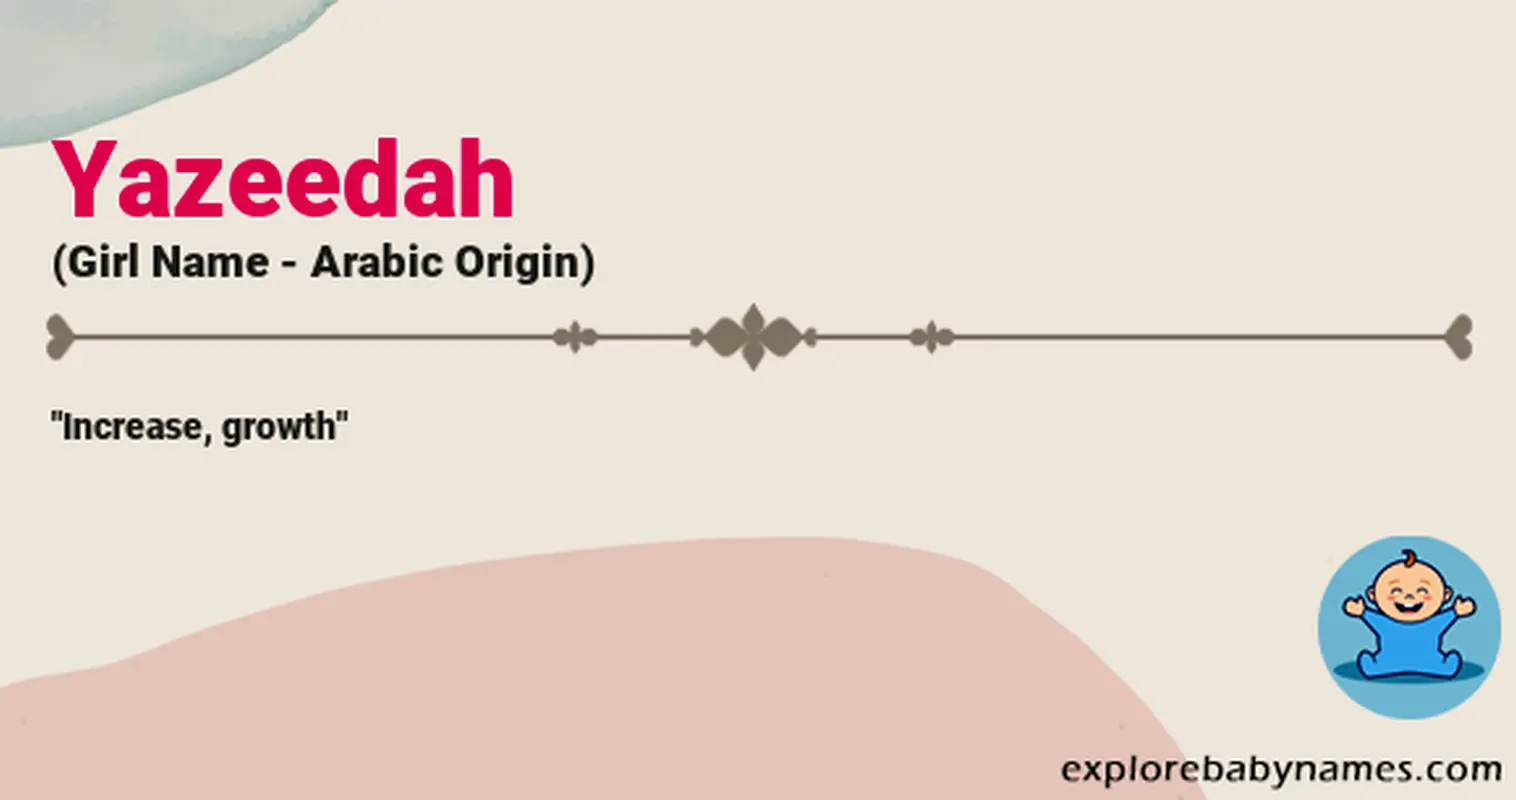 Meaning of Yazeedah